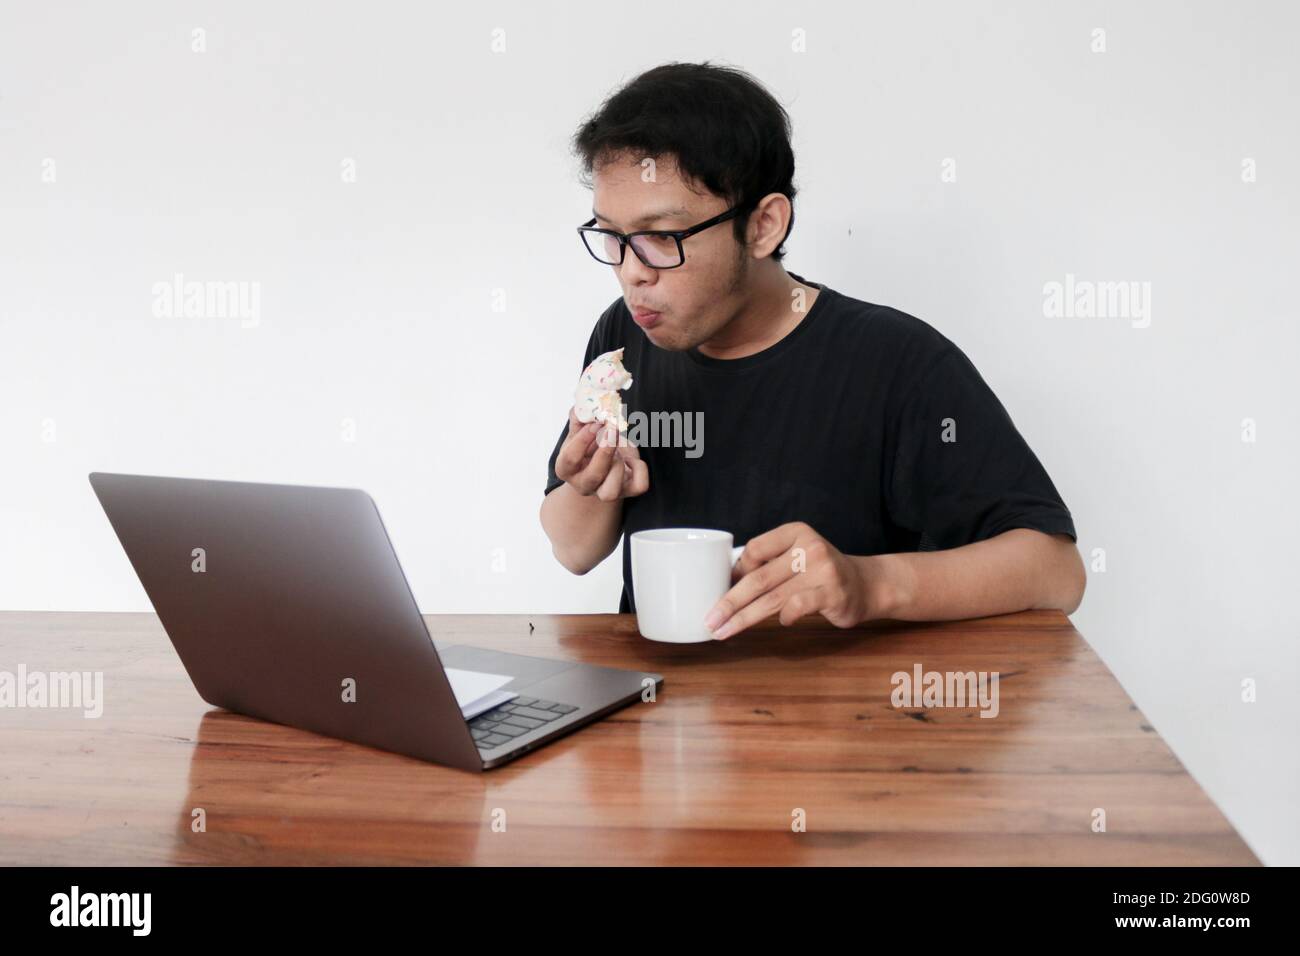 Un jeune homme asiatique mange du Donut et boit du café tout en travaillant avec un ordinateur portable. Indonésie Homme porter chemise noire fond gris isolé. Banque D'Images